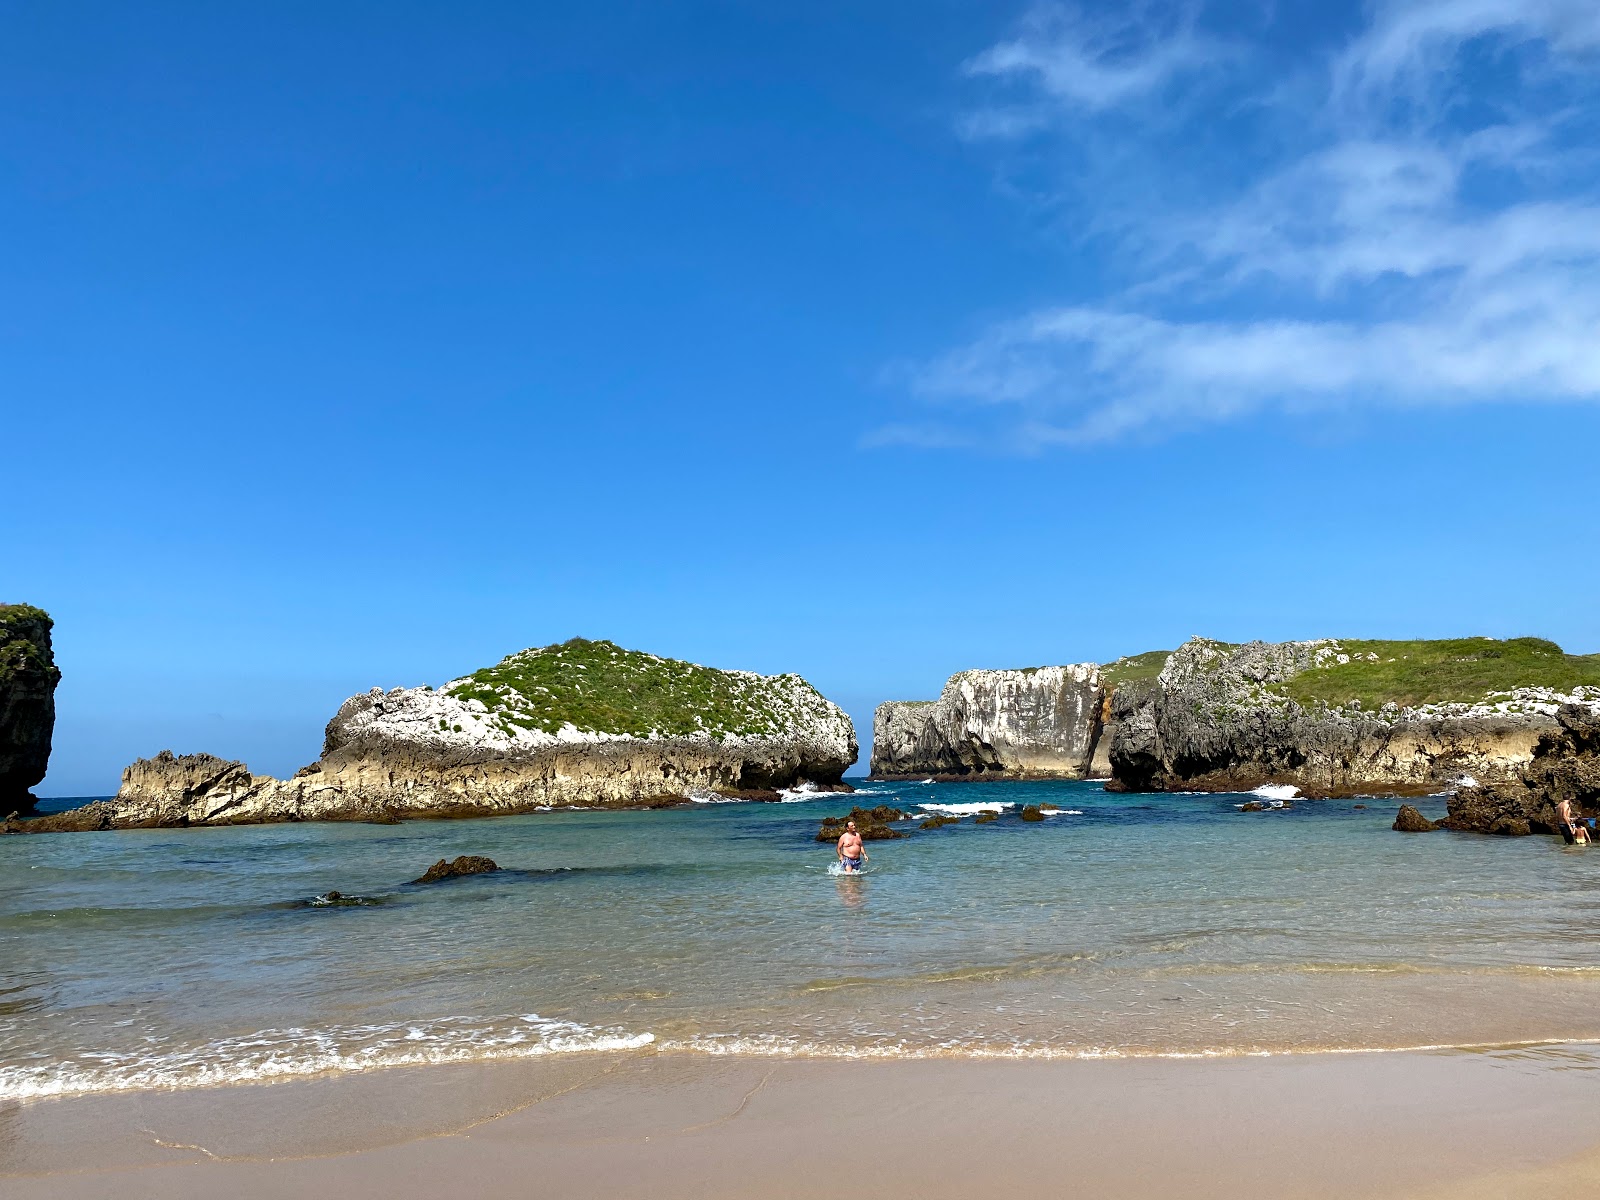 Zdjęcie Plaża Cué - Antyle - popularne miejsce wśród znawców relaksu